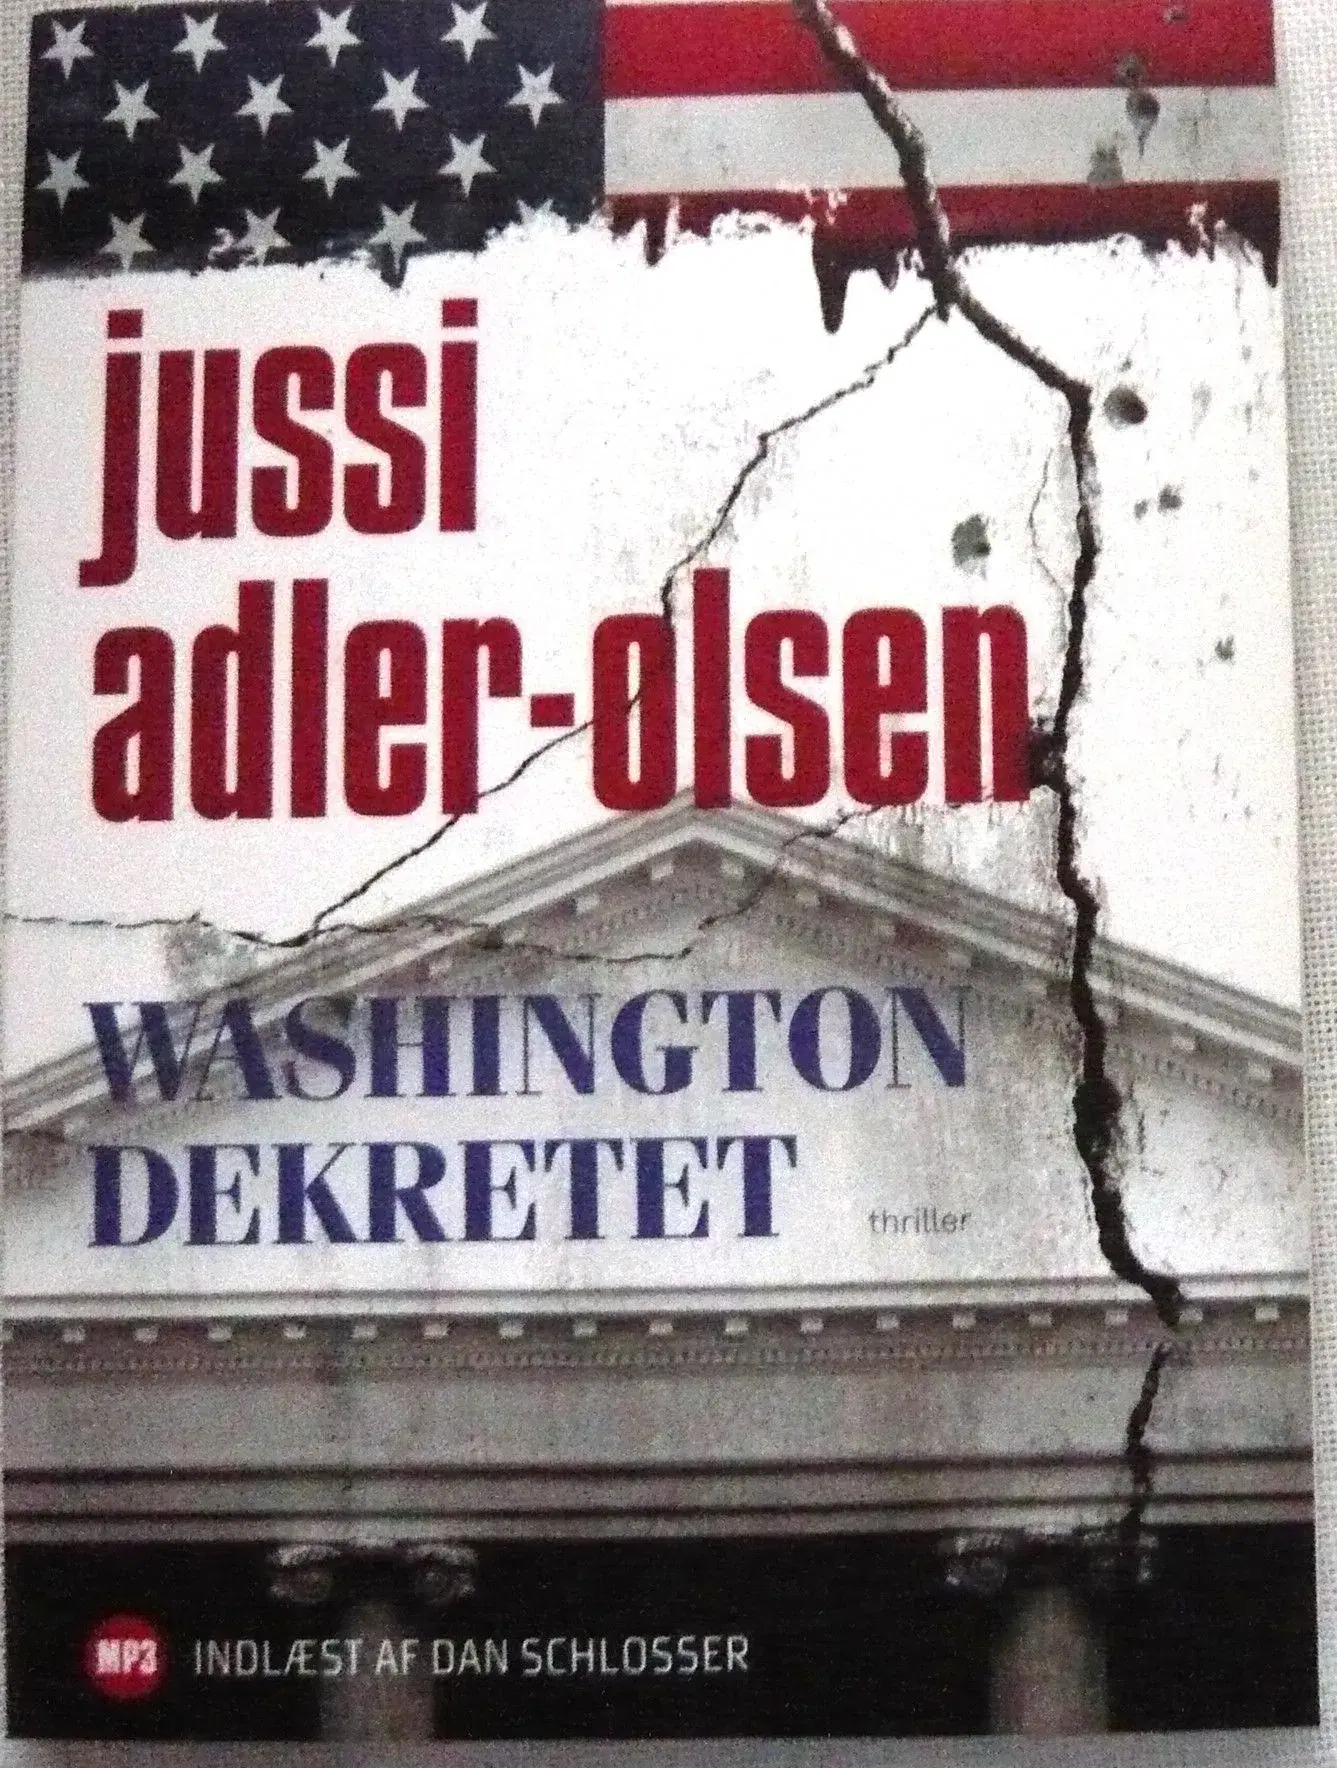 Jussi Adler-Olsen - MP3 lydbøger